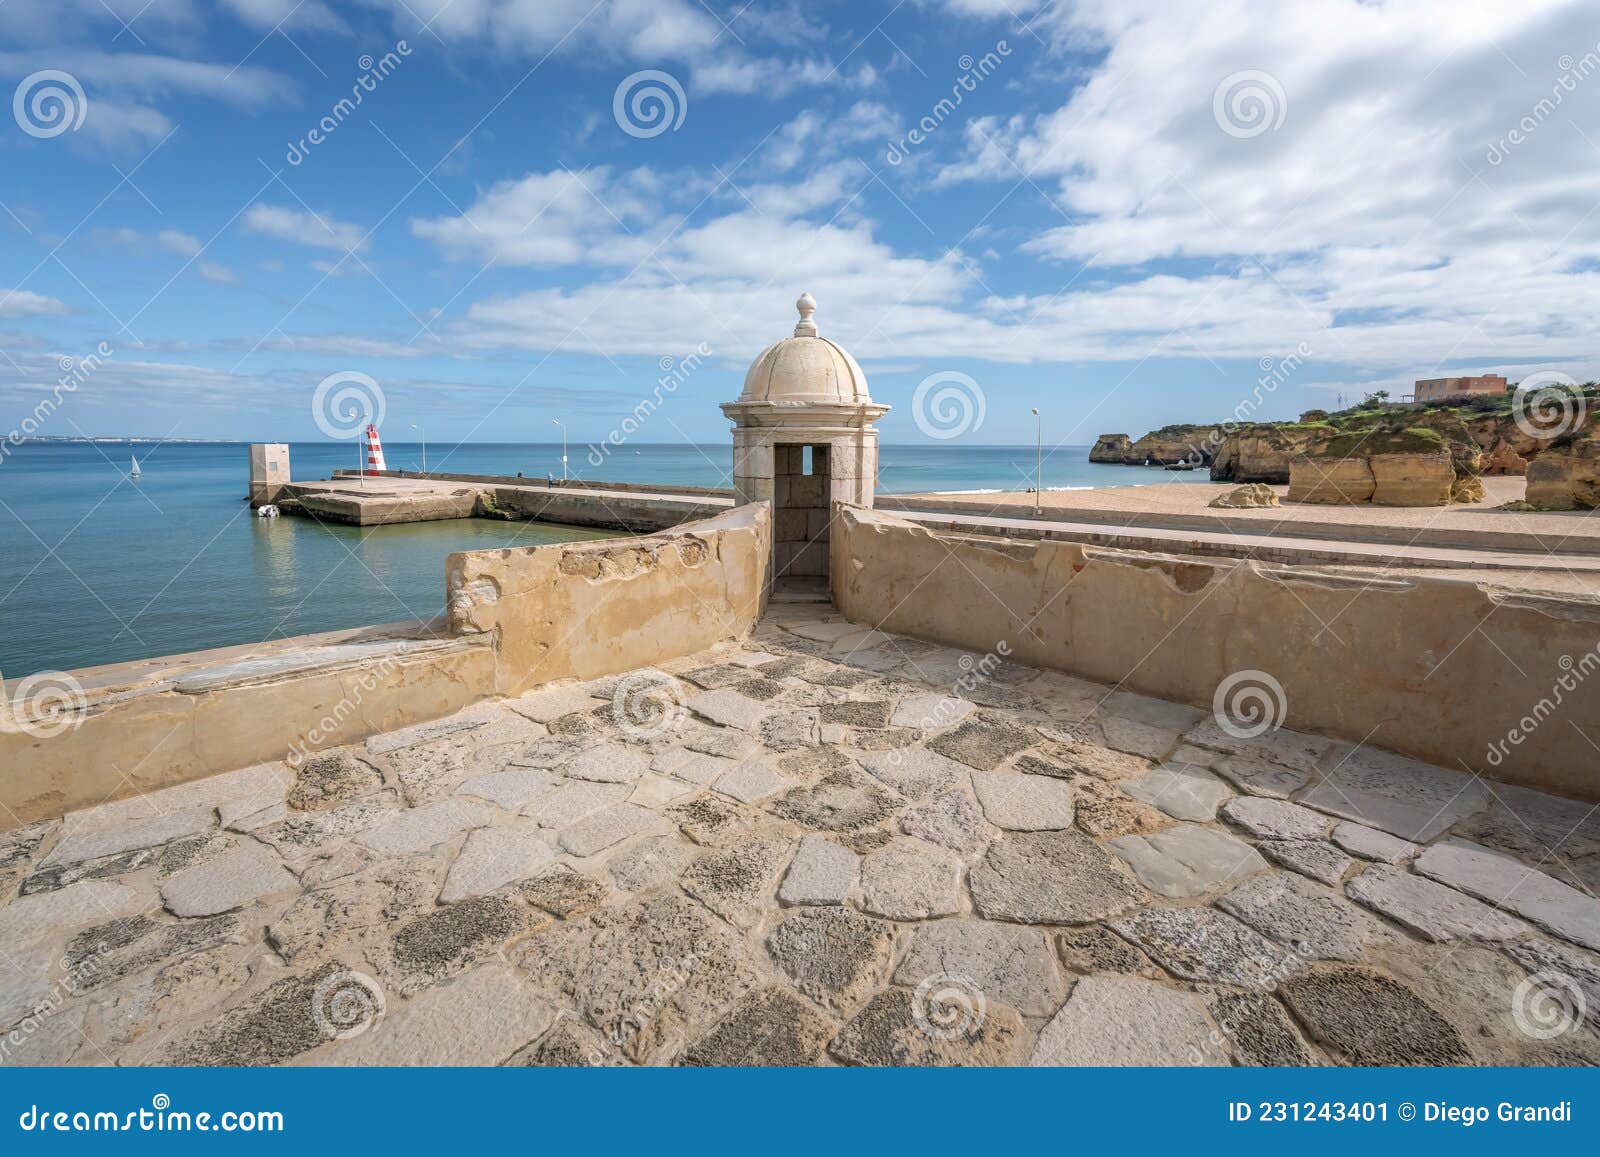 turret at fort of ponta da bandeira forte da ponta da bandeira - lagos, algarve, portugal